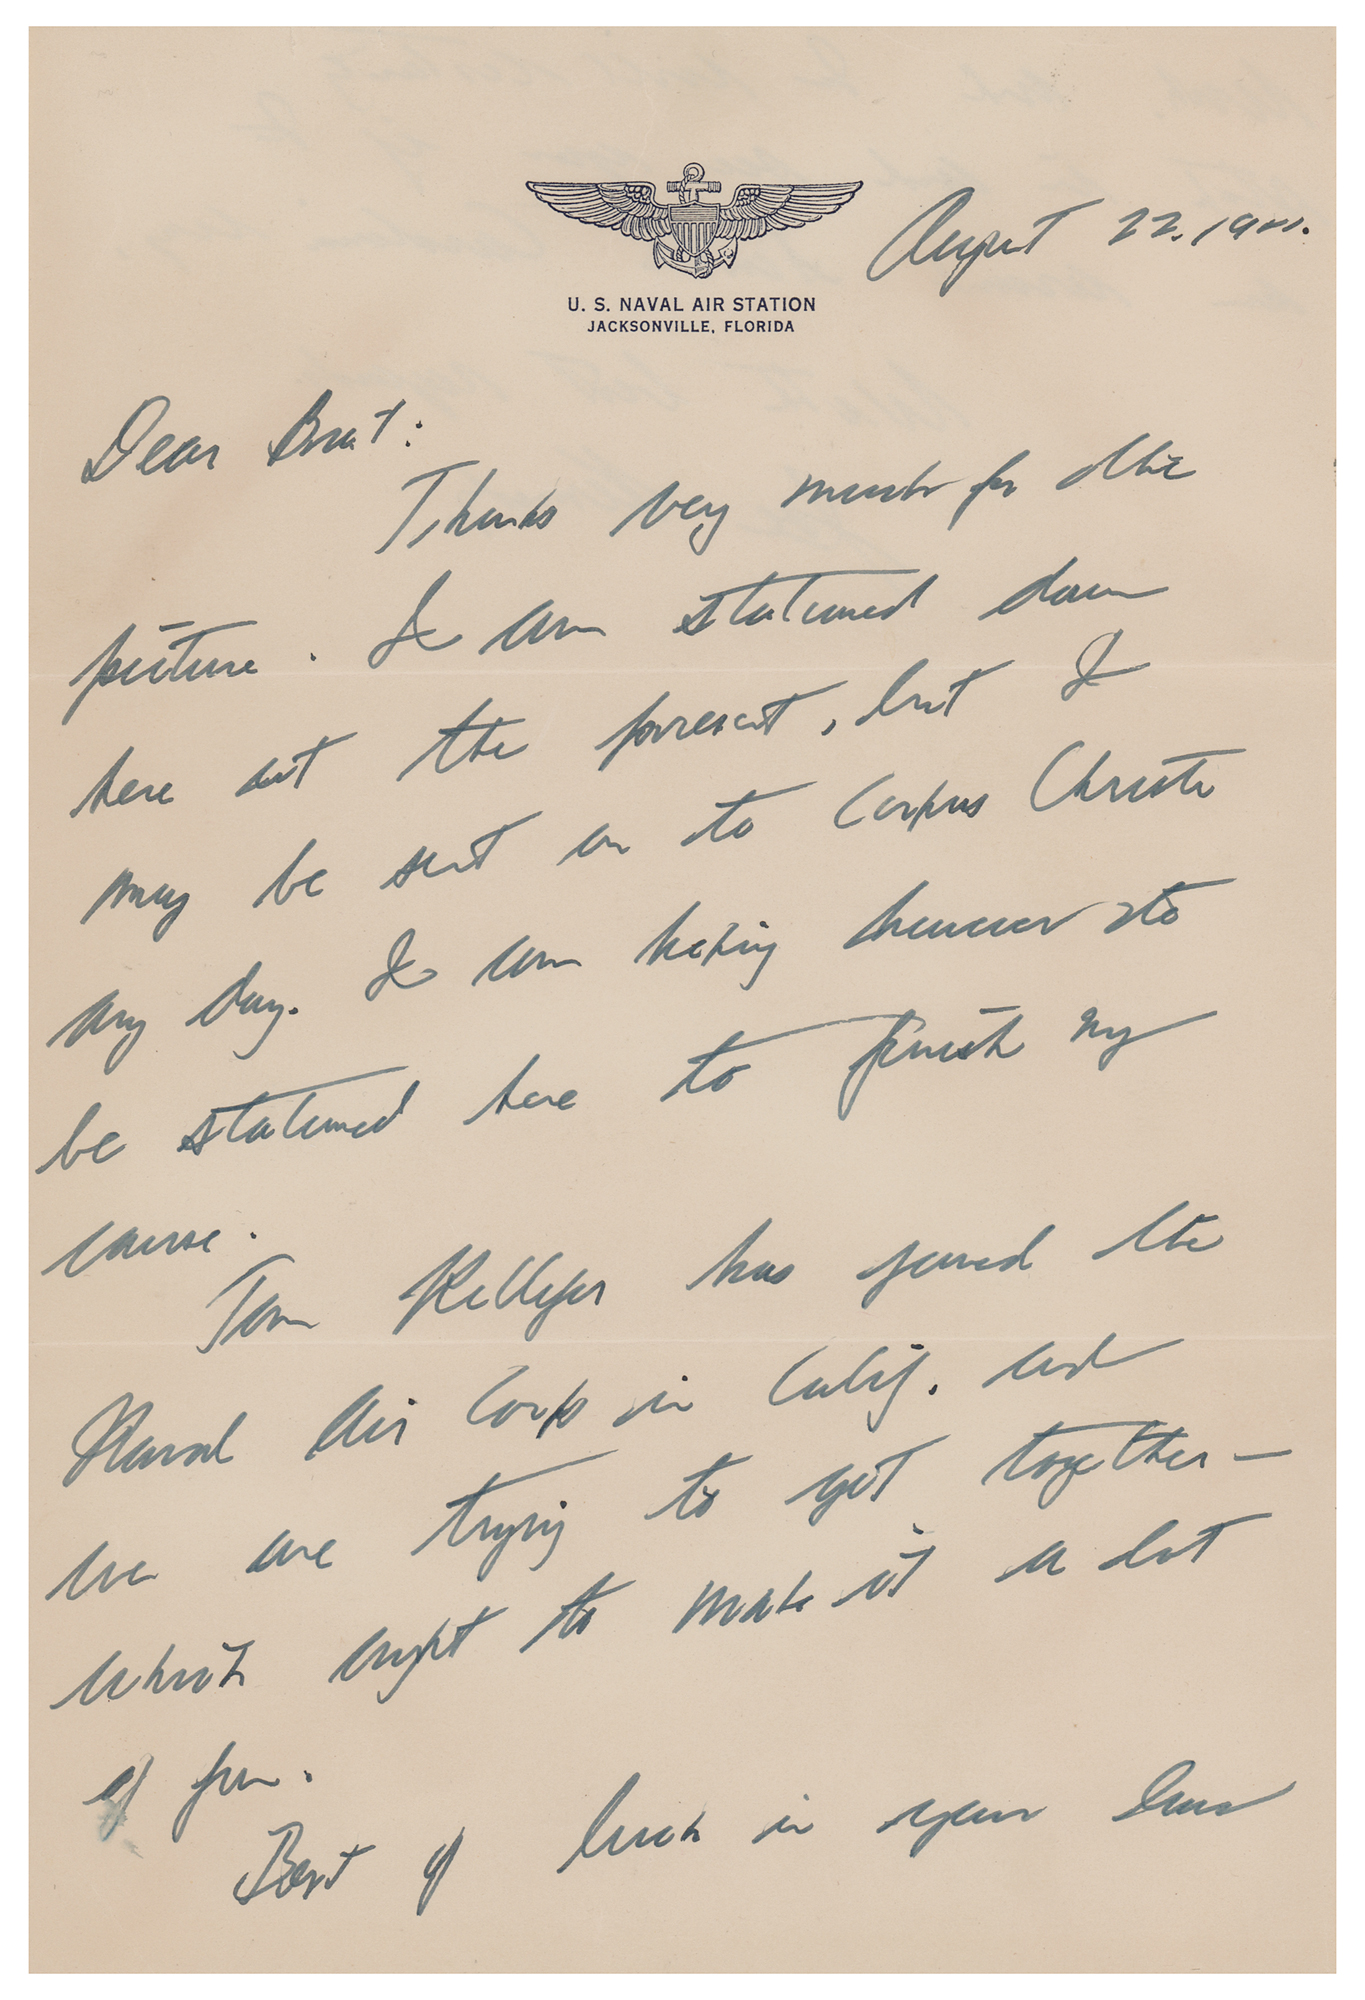 Lot #177 Joseph P. Kennedy, Jr Autograph Letter Signed